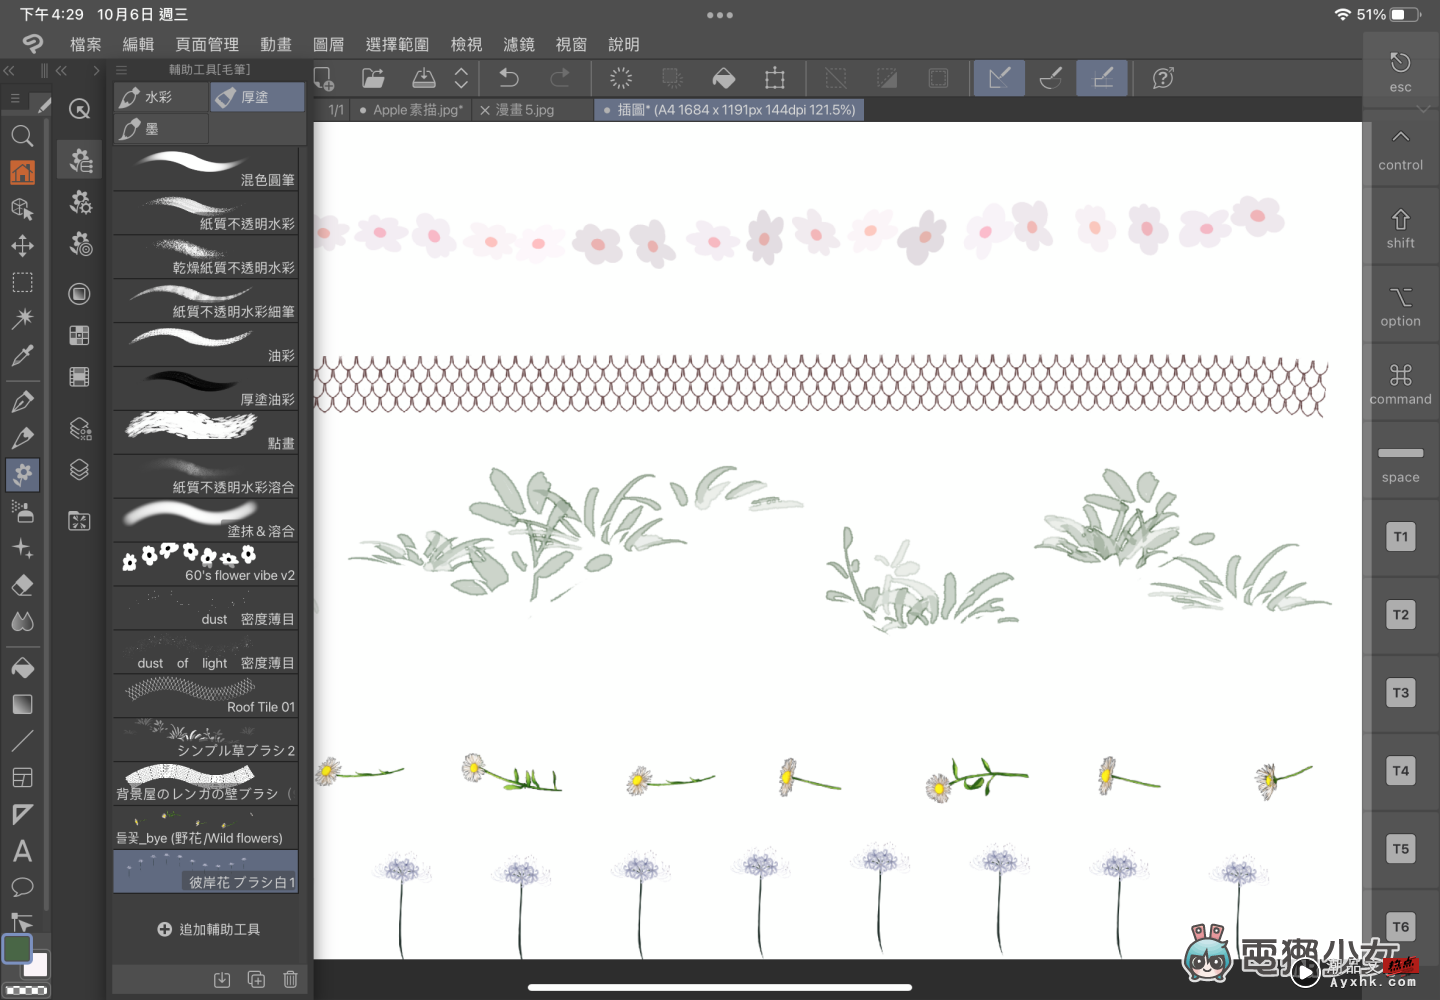 来看我画画！超强大绘图软件 Clip Studio Paint 功能齐全，插画、漫画和动画一次搞定！ 数码科技 图18张